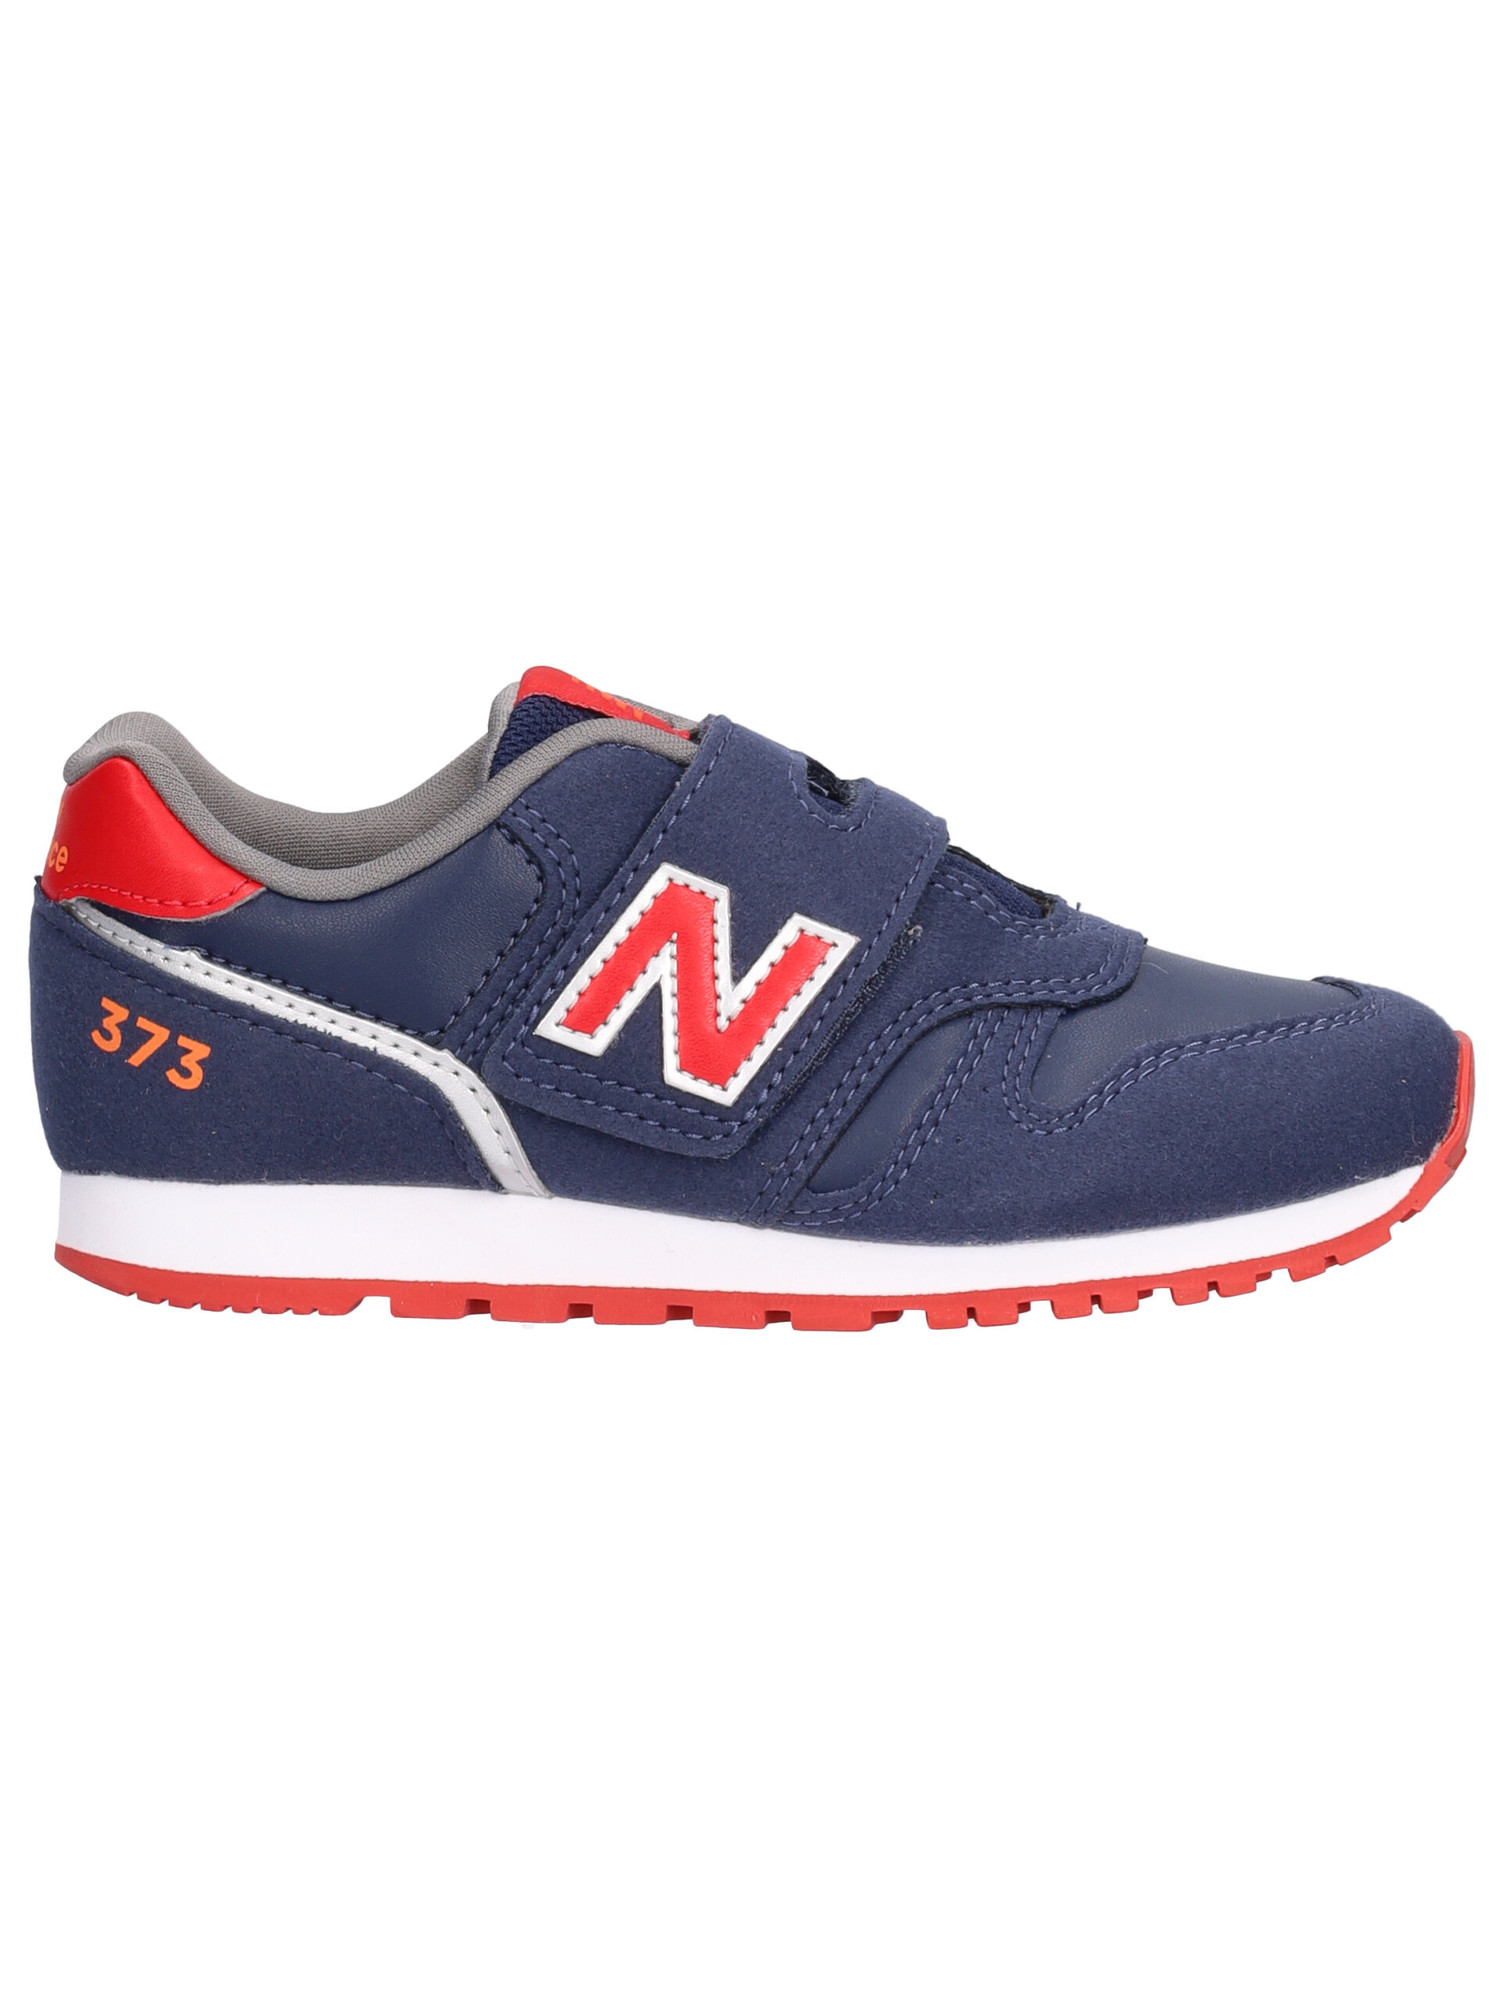 sneaker-new-balance-373-da-bambino-blu